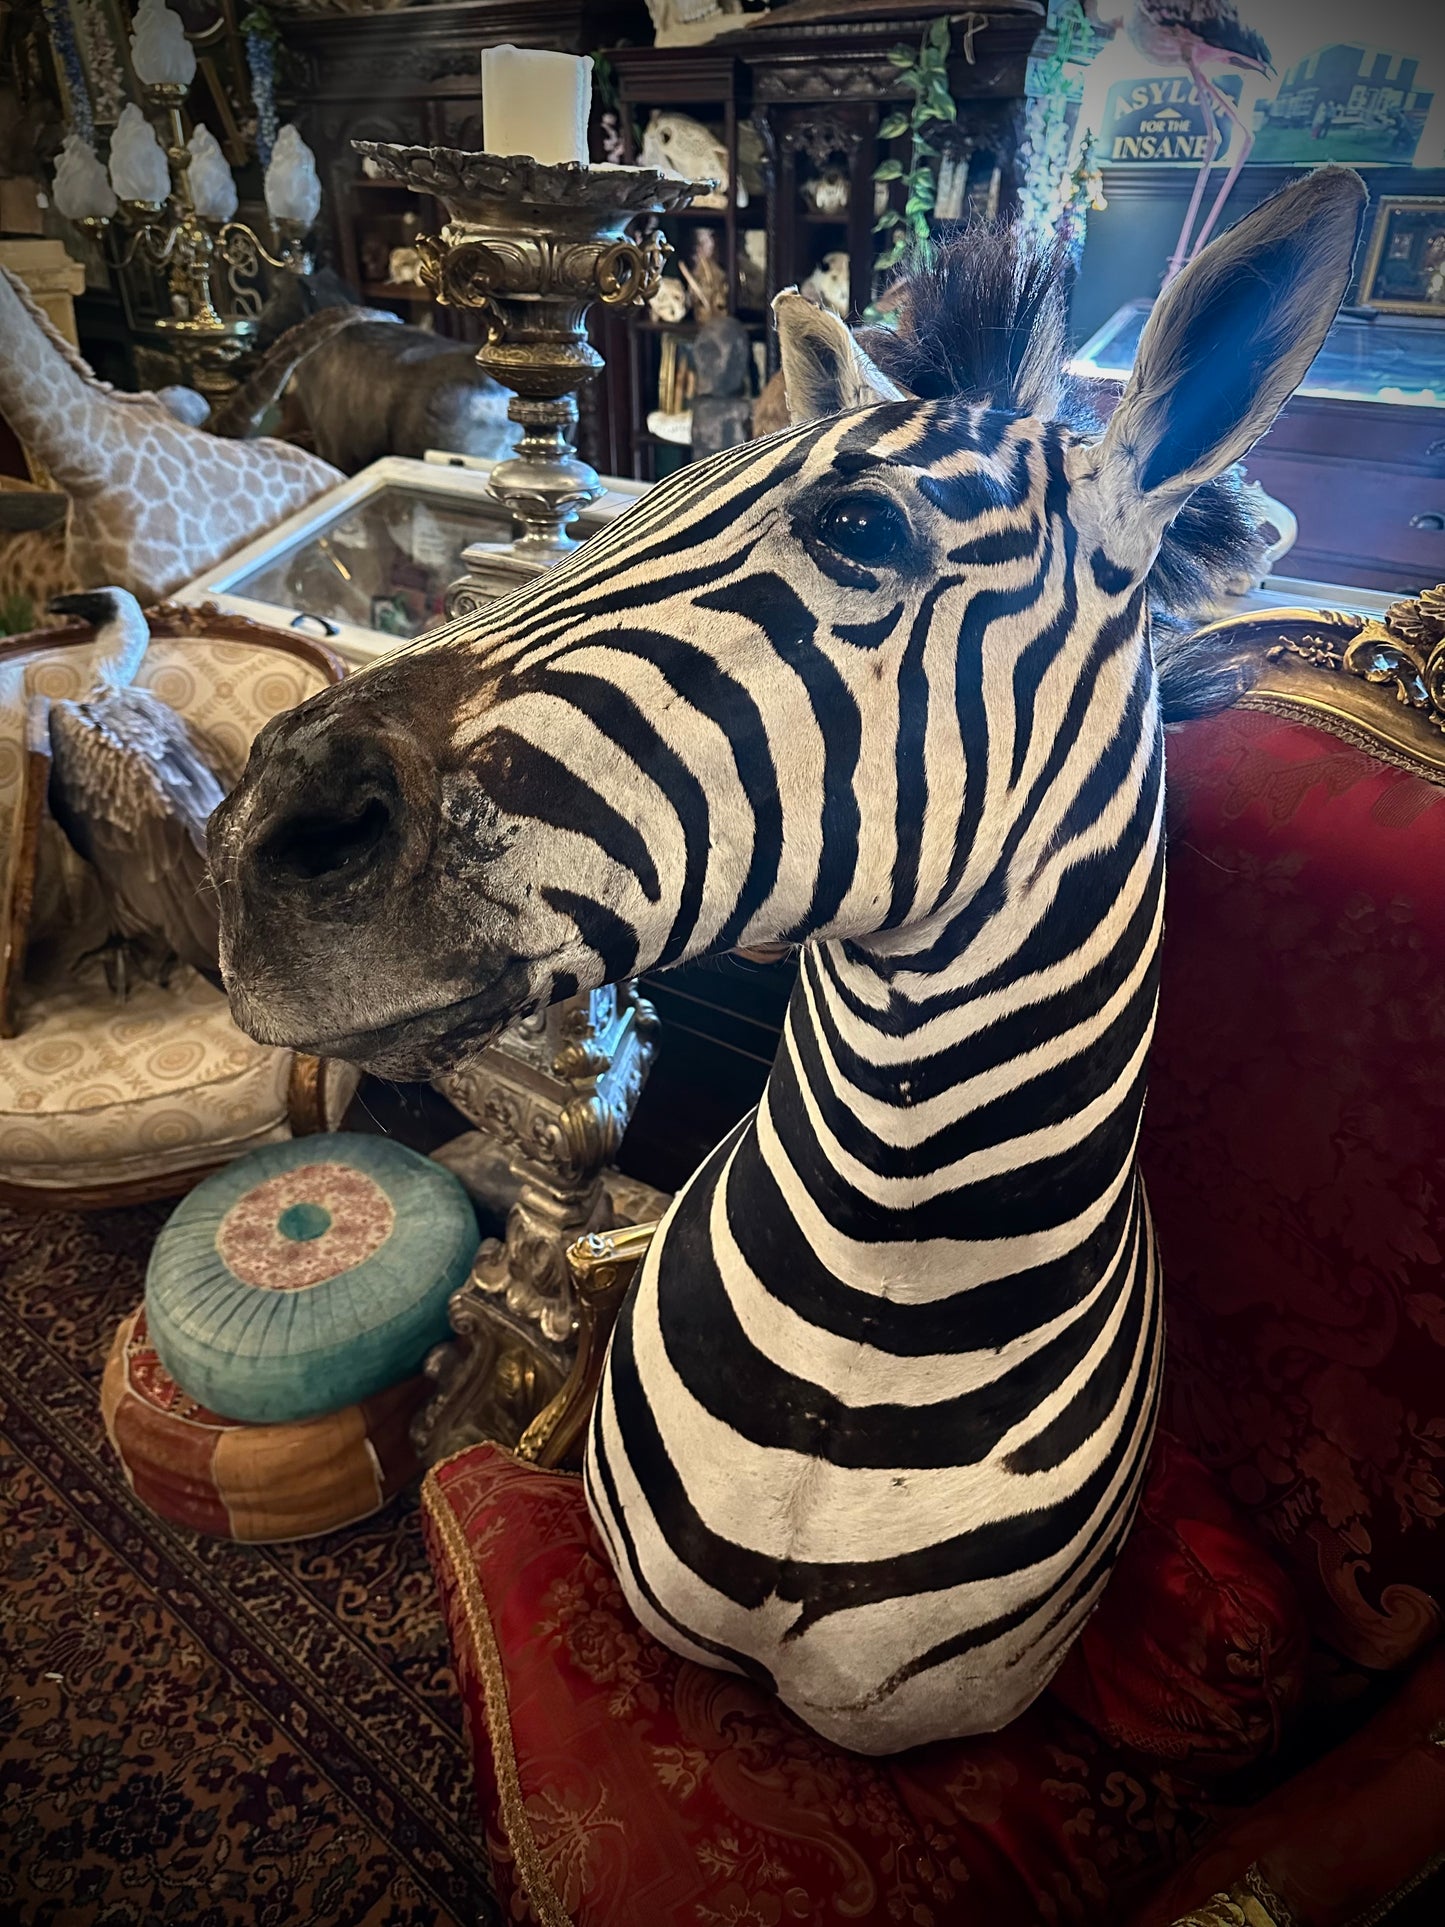 Zebra head new taxidermy